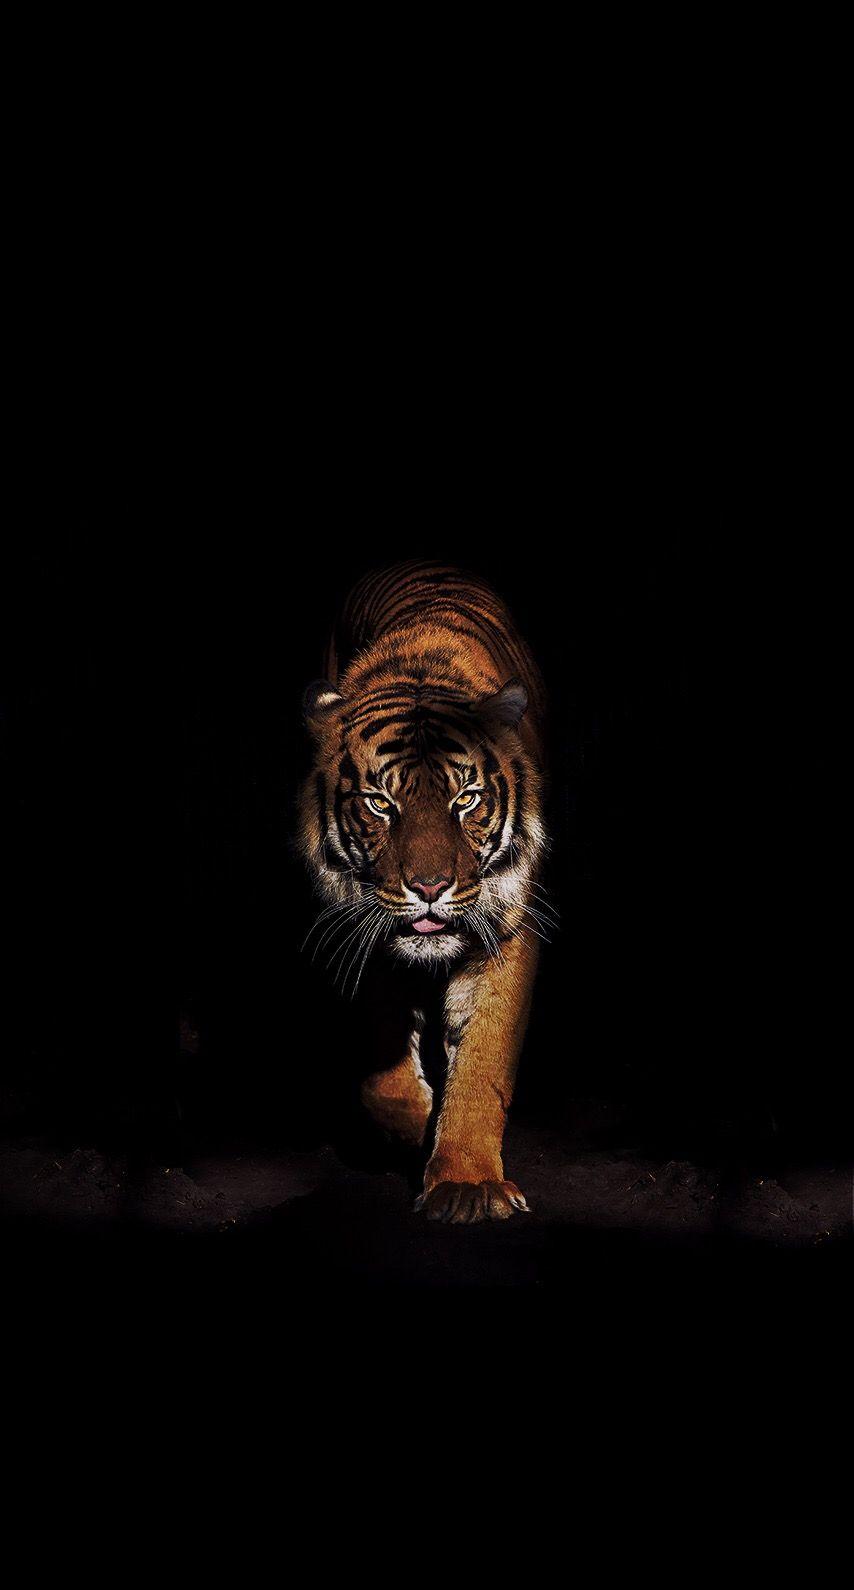 TIGER IN THE DARK. Tiger wallpaper, Animal wallpaper, Cat